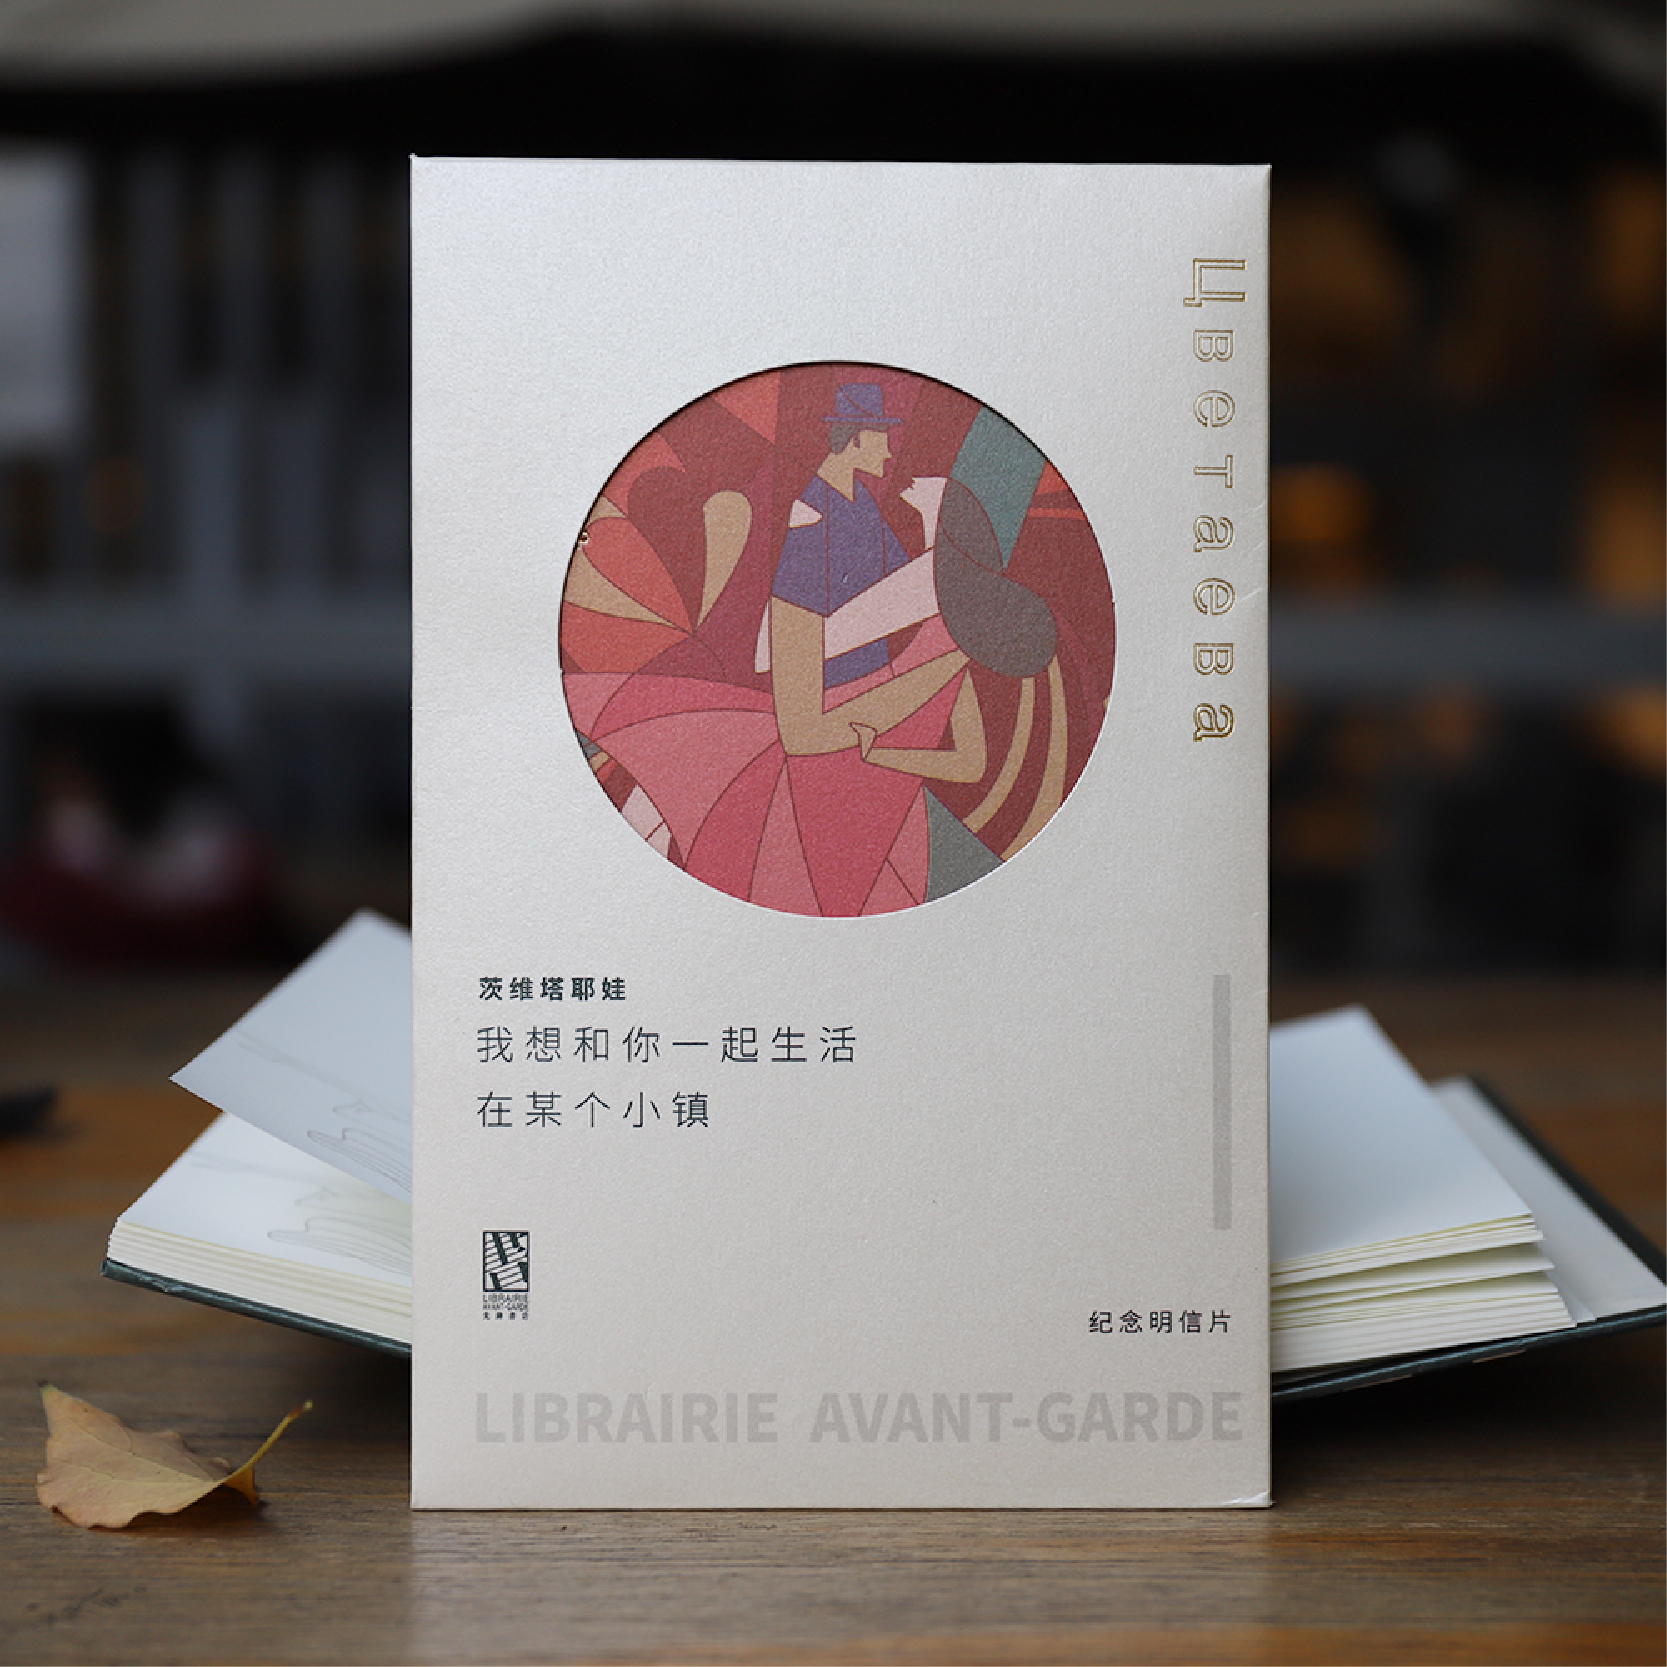 【诗人系列明信片】 我想和你一起生活 南京先锋书店设计师款